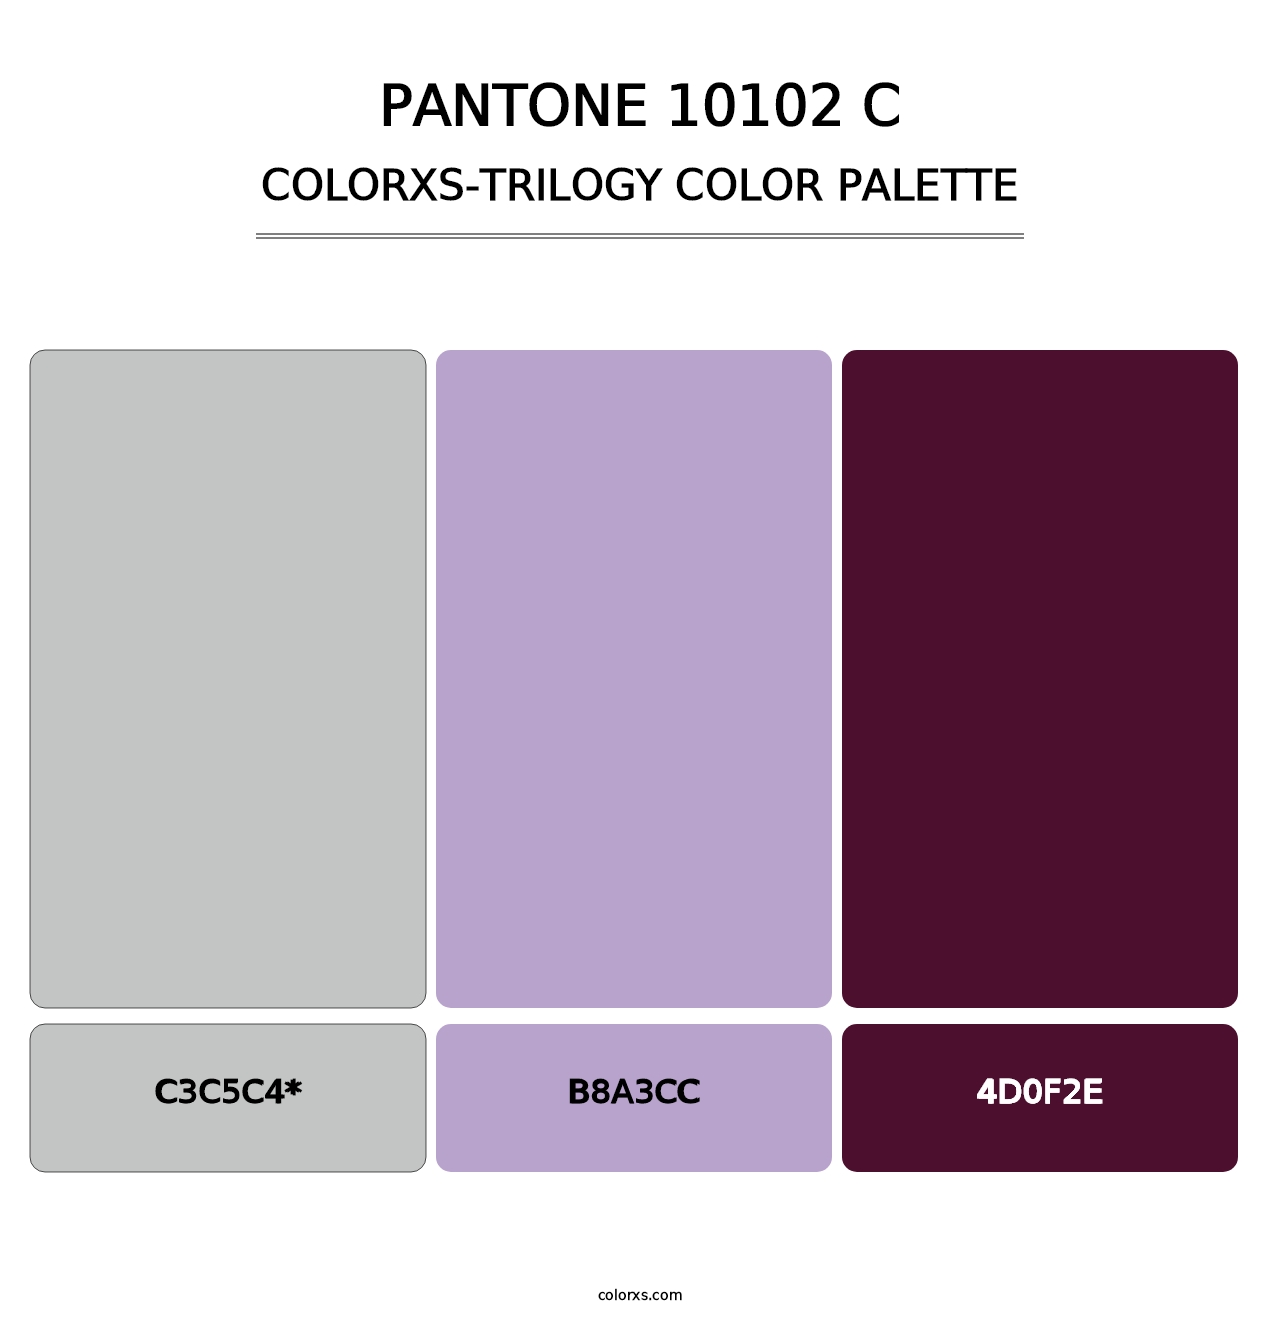 PANTONE 10102 C - Colorxs Trilogy Palette